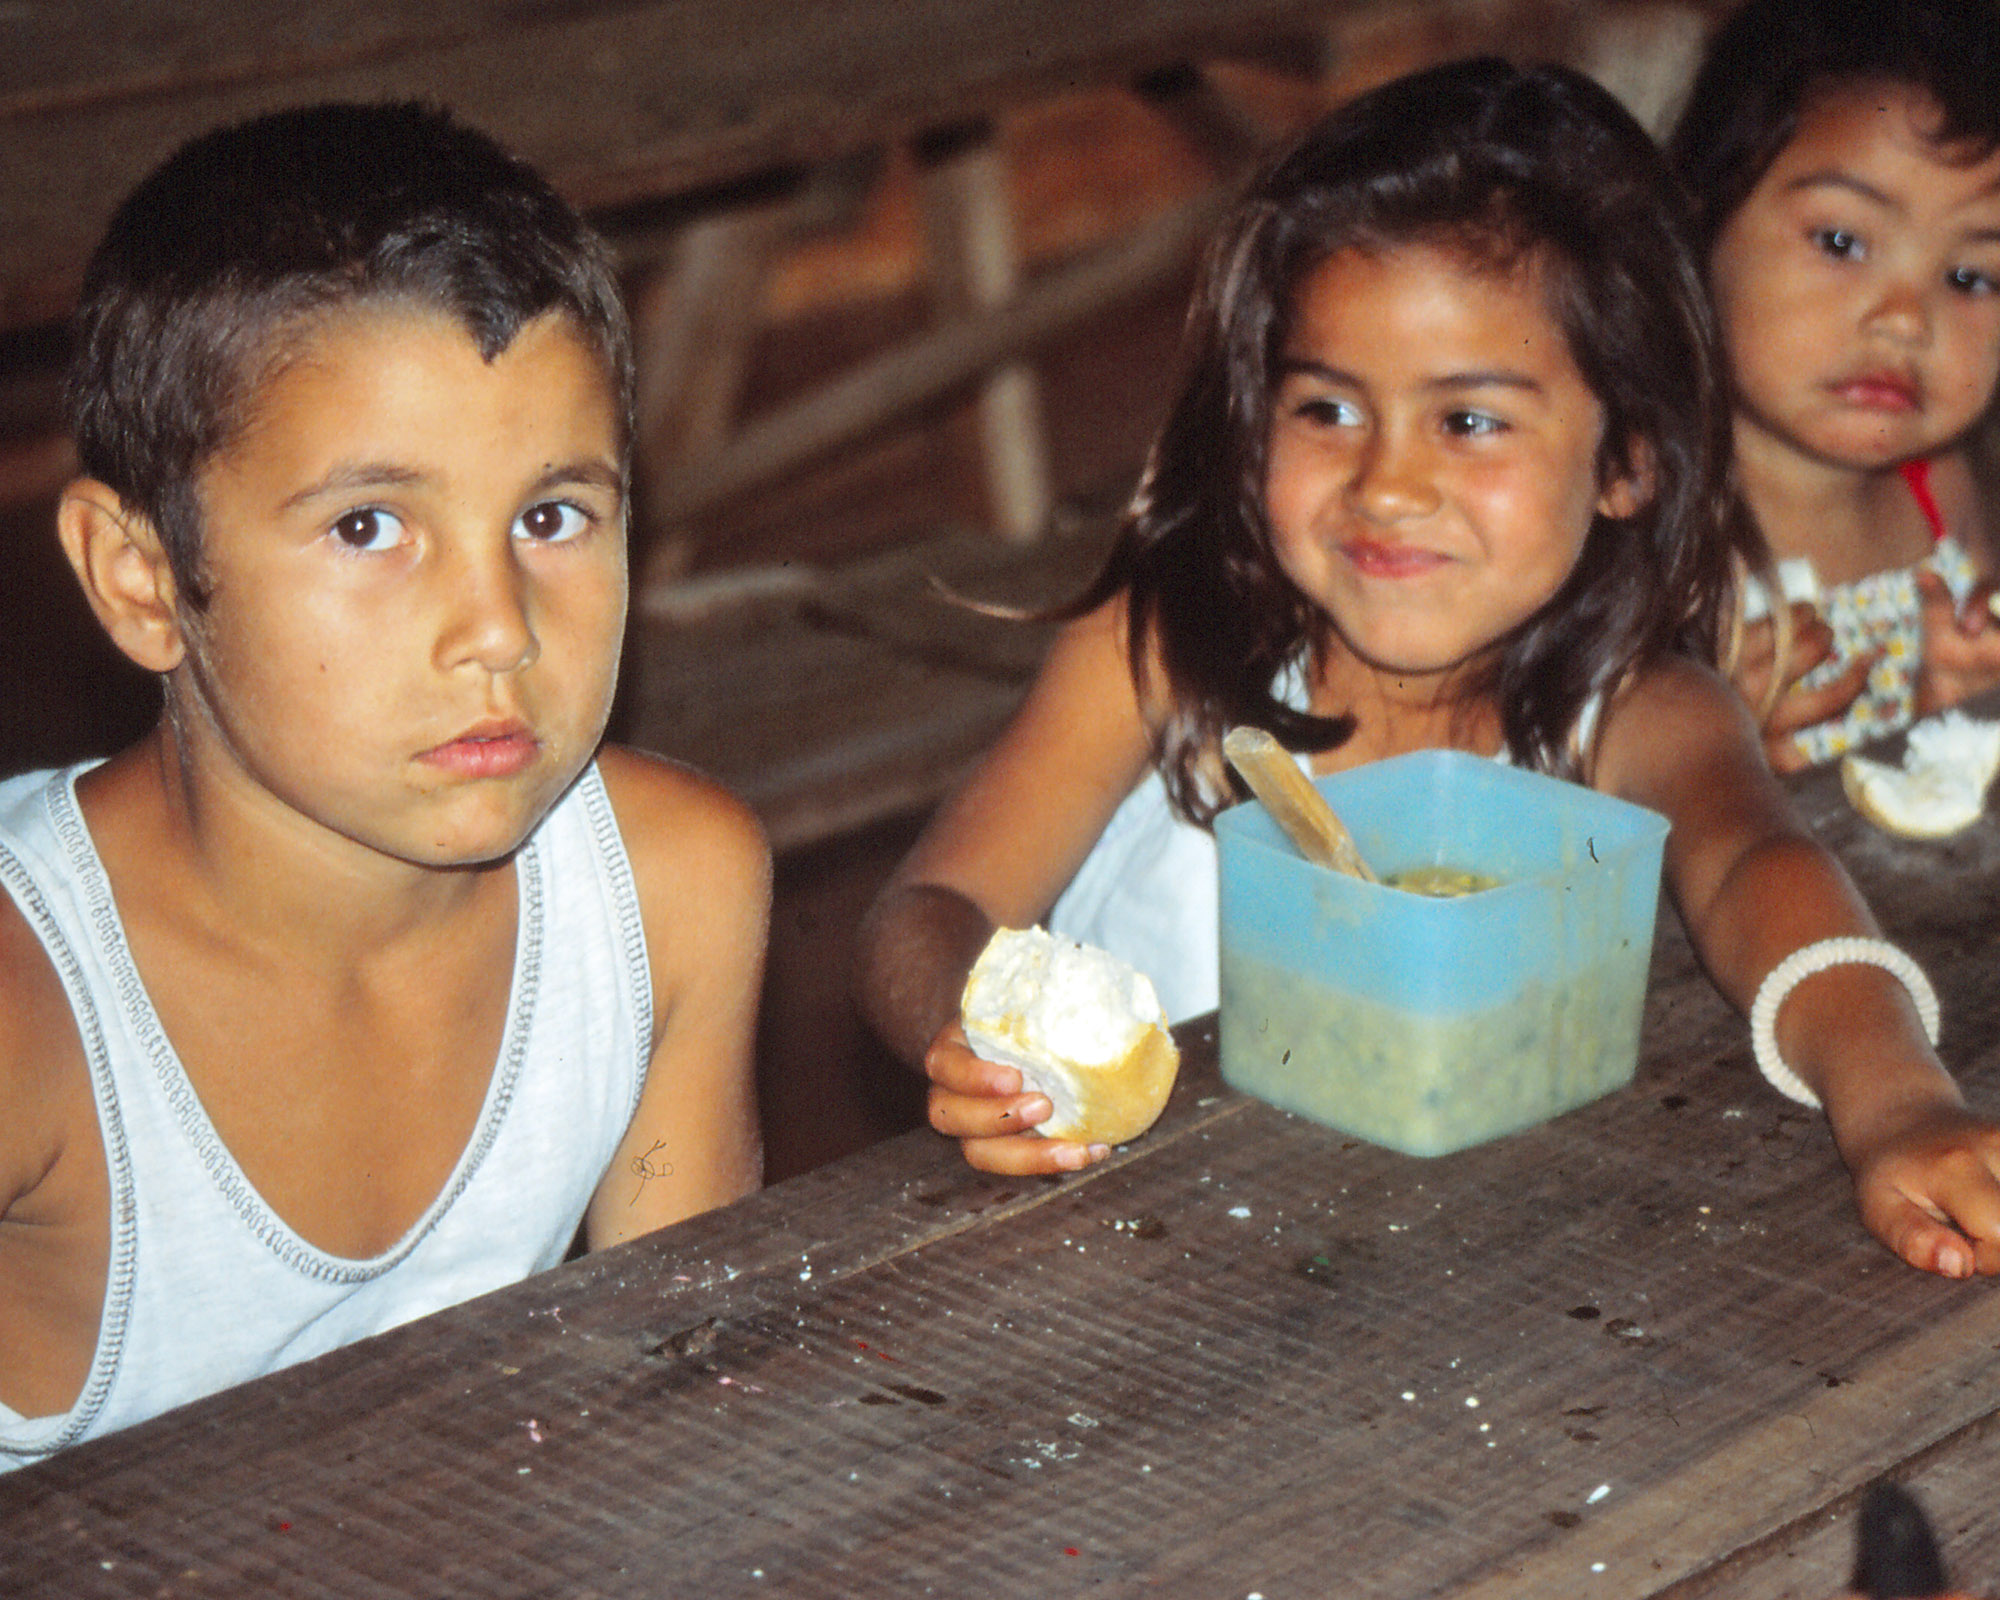 Kinder in der Provinz Misiones in Argentinien. (c) Markus Schenk (2001)